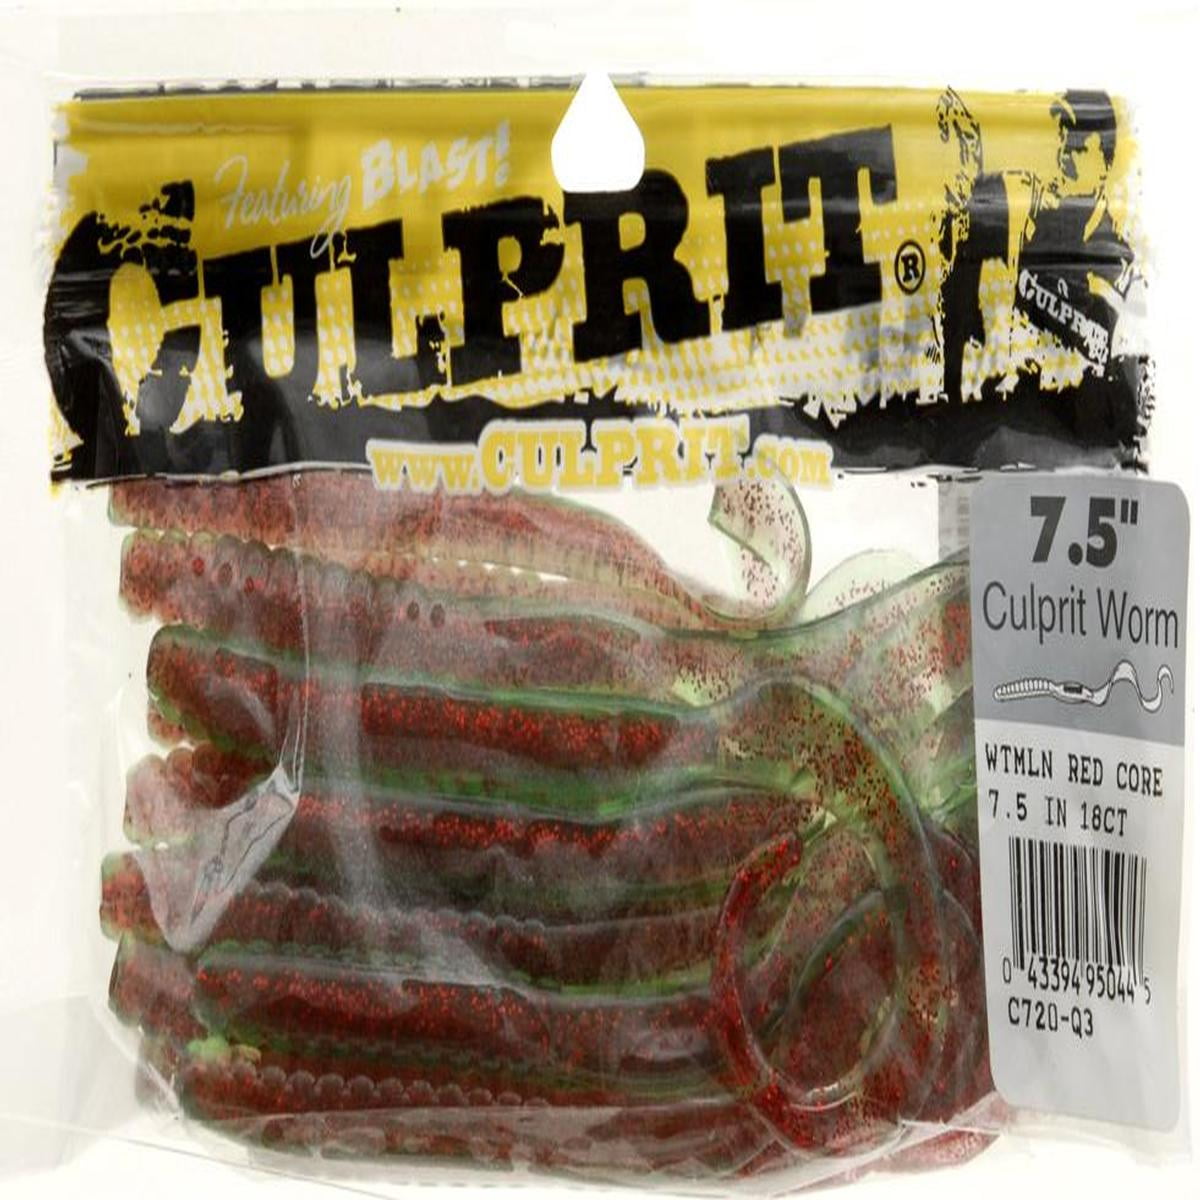 Culprit Original Worms - 7.5 - Dance's Sporting Goods